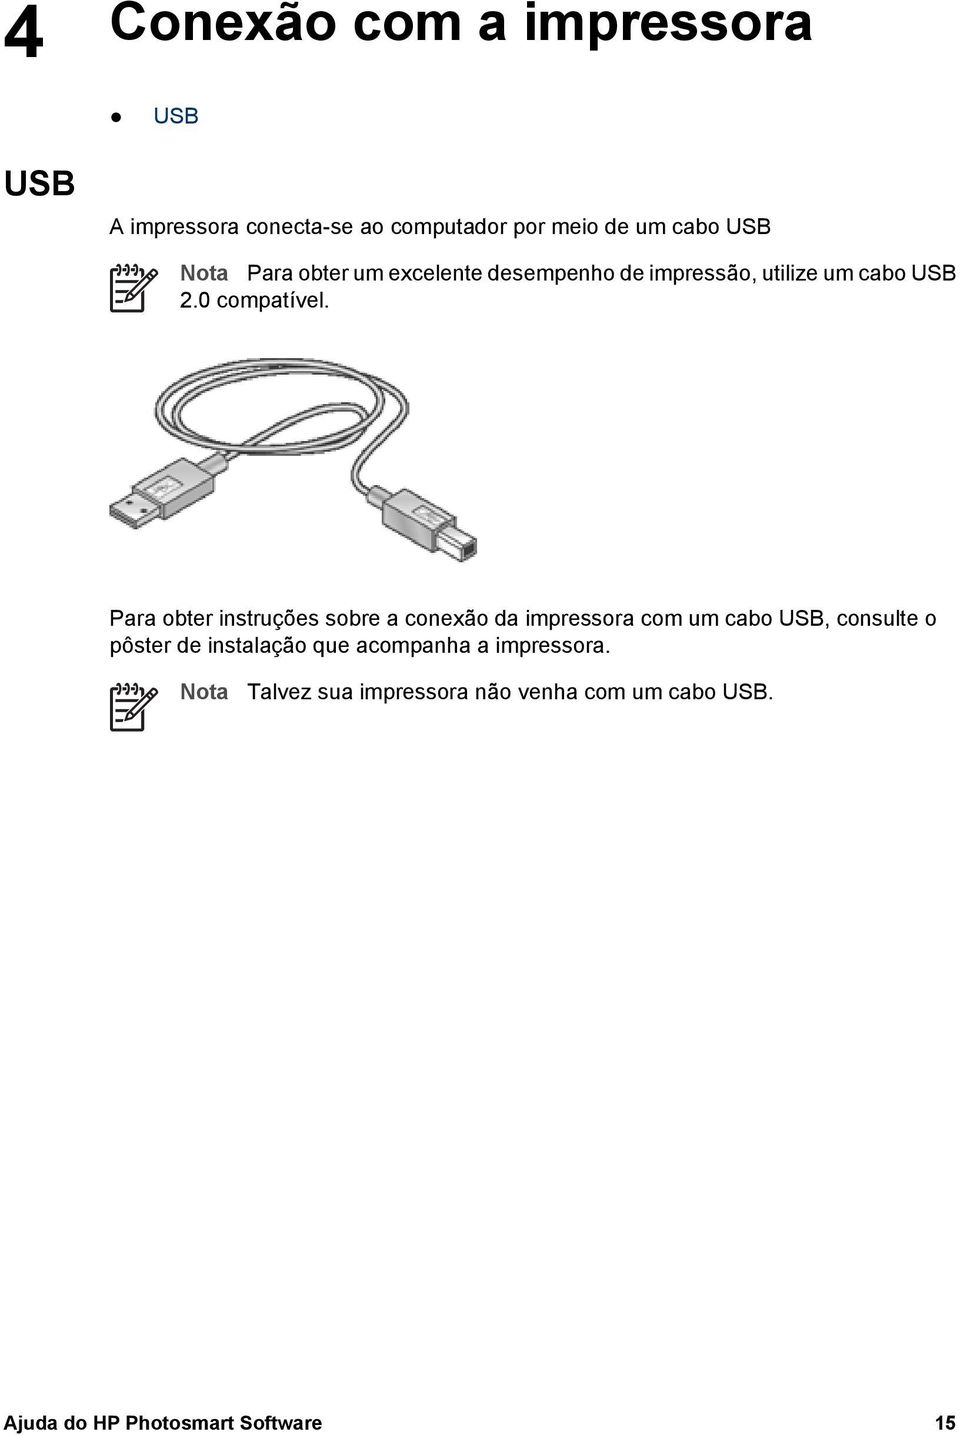 Para obter instruções sobre a conexão da impressora com um cabo USB, consulte o pôster de instalação